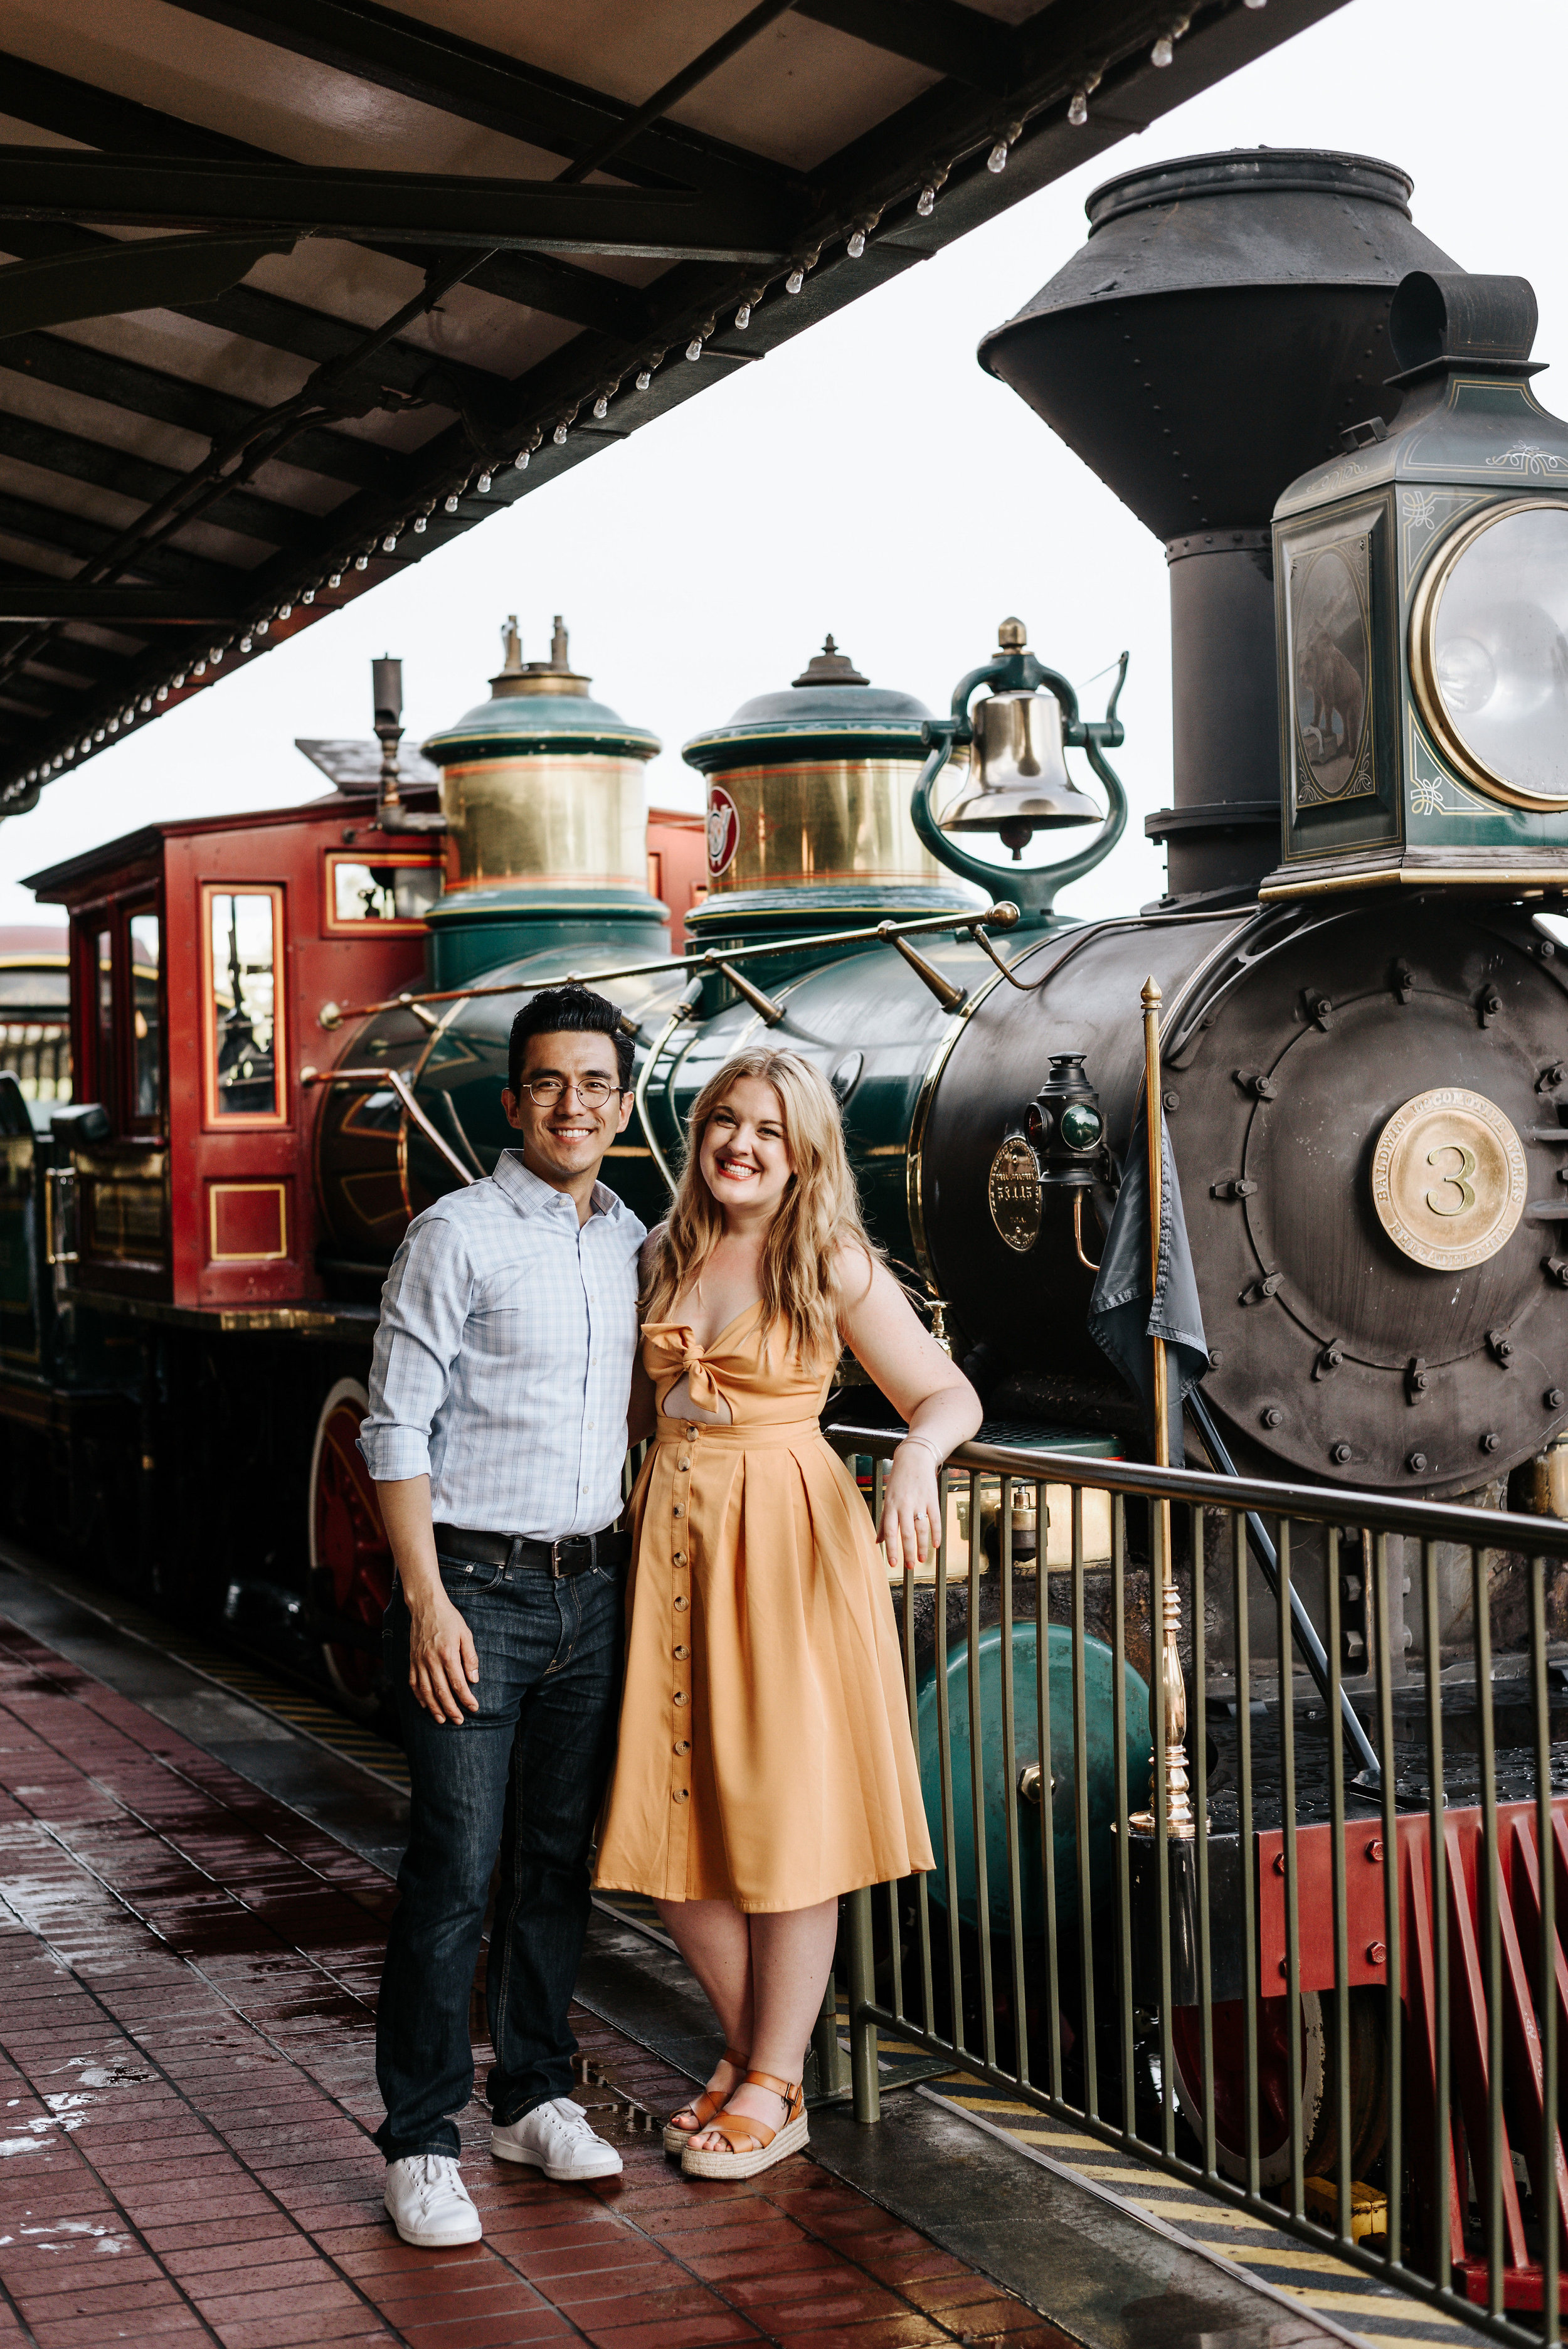 Walt Disney World Railroad Train Station, Florida Weddings